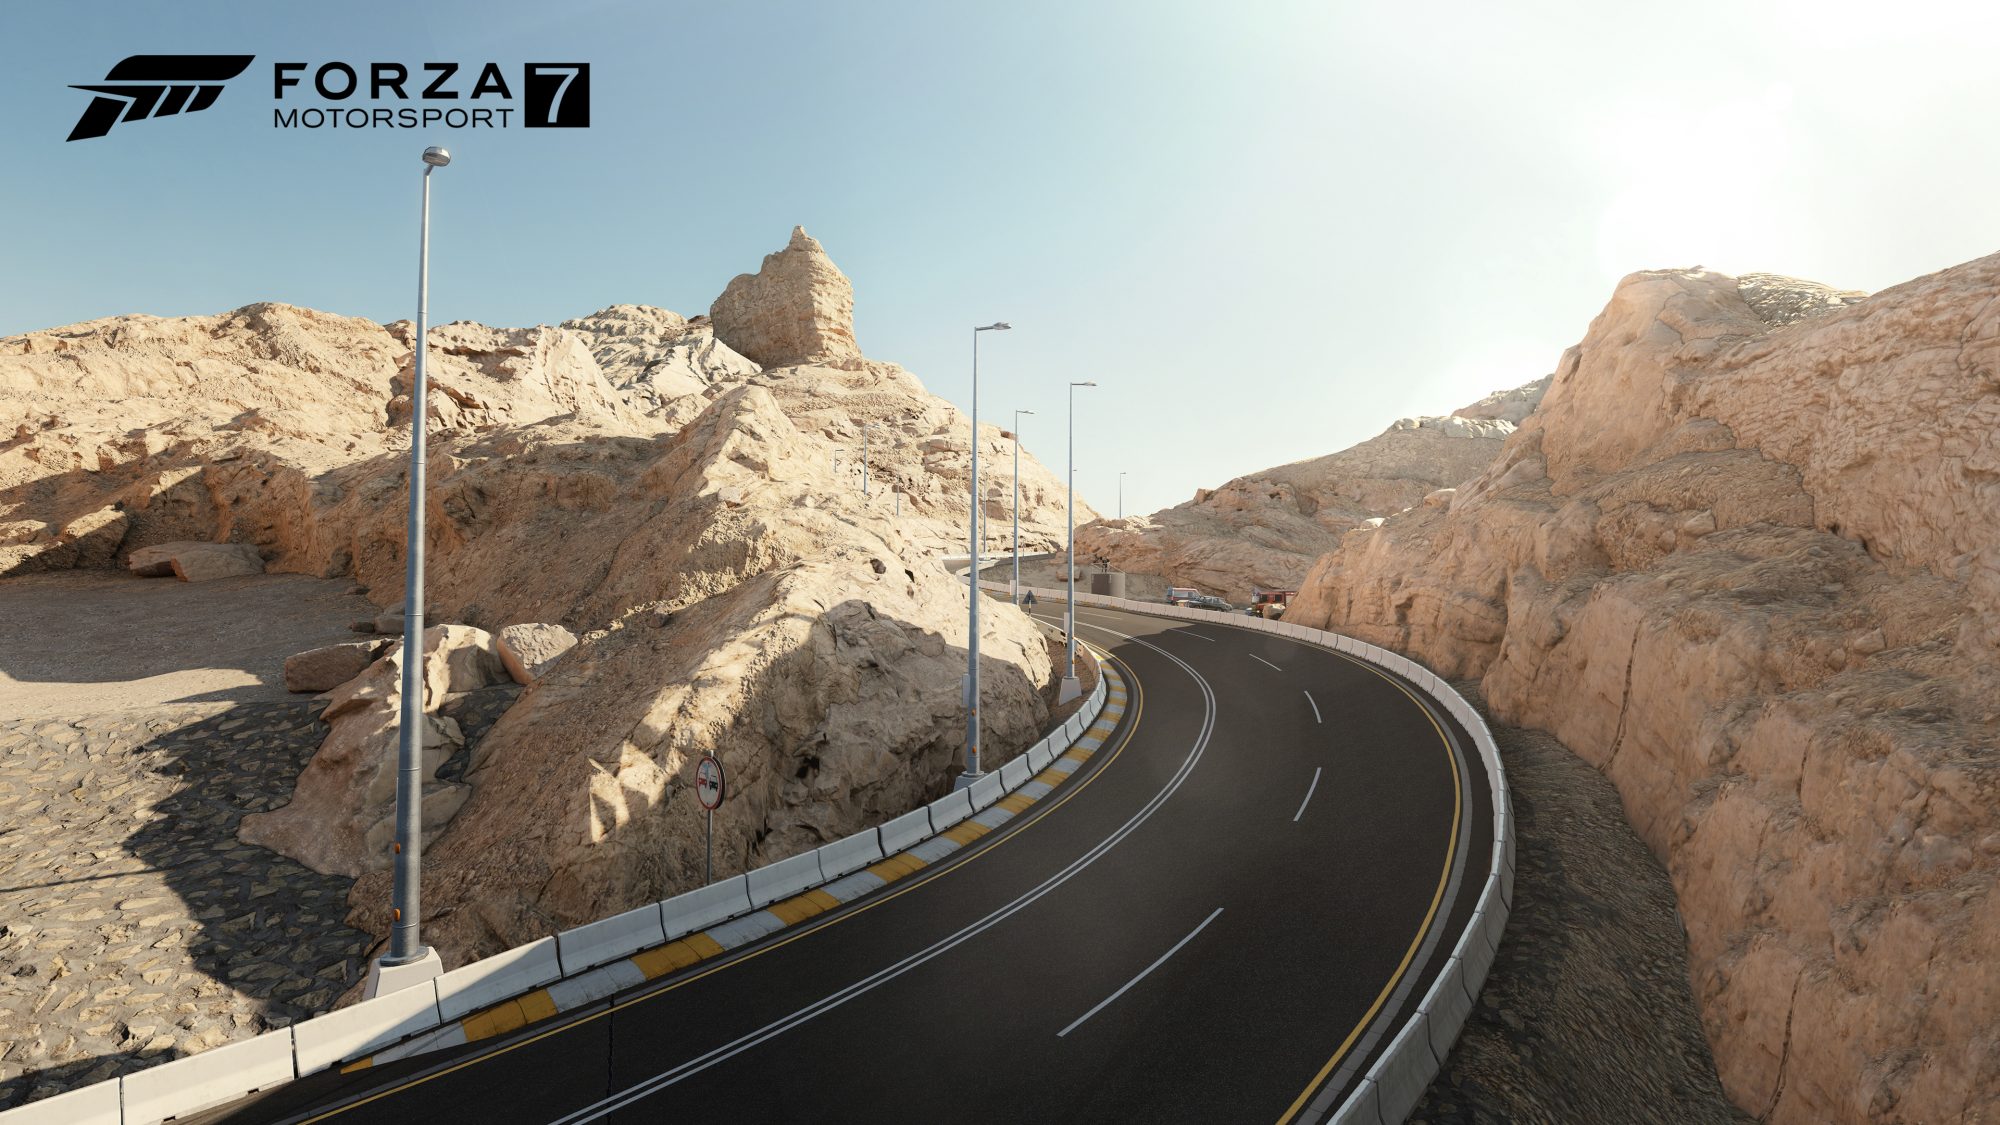 Forza Mortorsport 7 FM7 Forza 7 Xbox One PC Xbox One X Tracks Dubai.